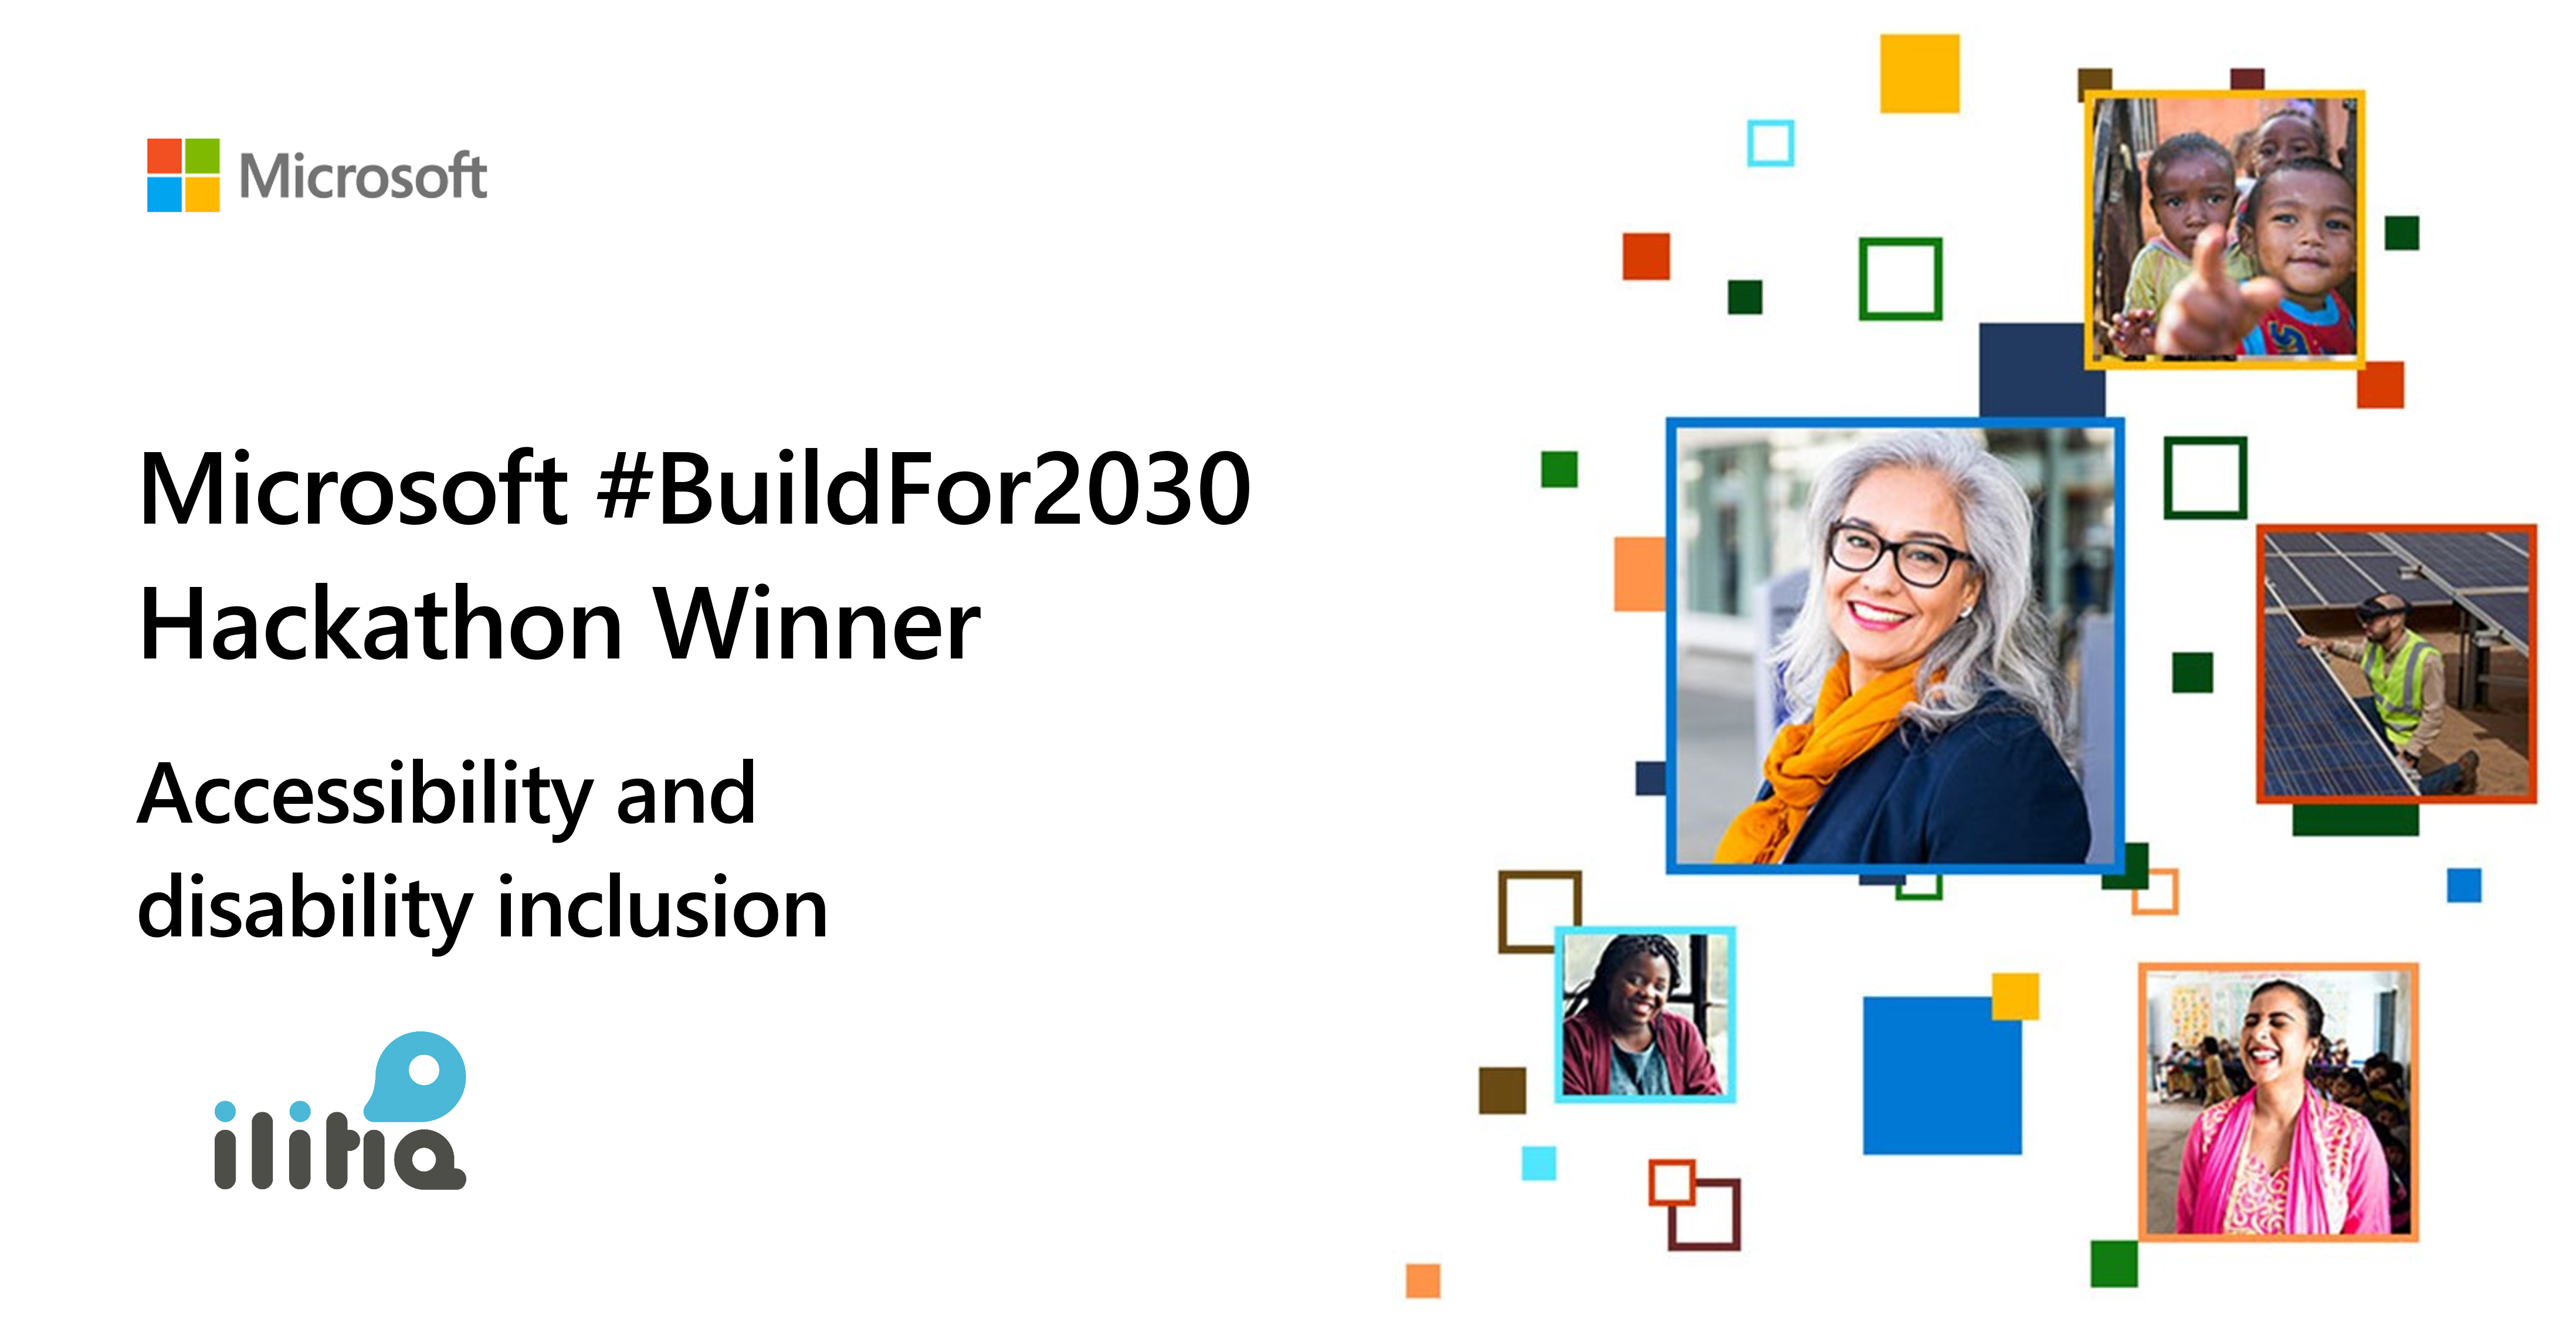 A la izquierda está el logotipo de Microsoft acompañado del texto: "Microsoft #BuildFor2030 Hackathon Winner", "Accessibility and Disability Inclusion" y el logotipo de ilitia. A la derecha hay imágenes de diversas personas de todo el mundo con los píxeles multicolores #BuildFor2030 que los rodean.